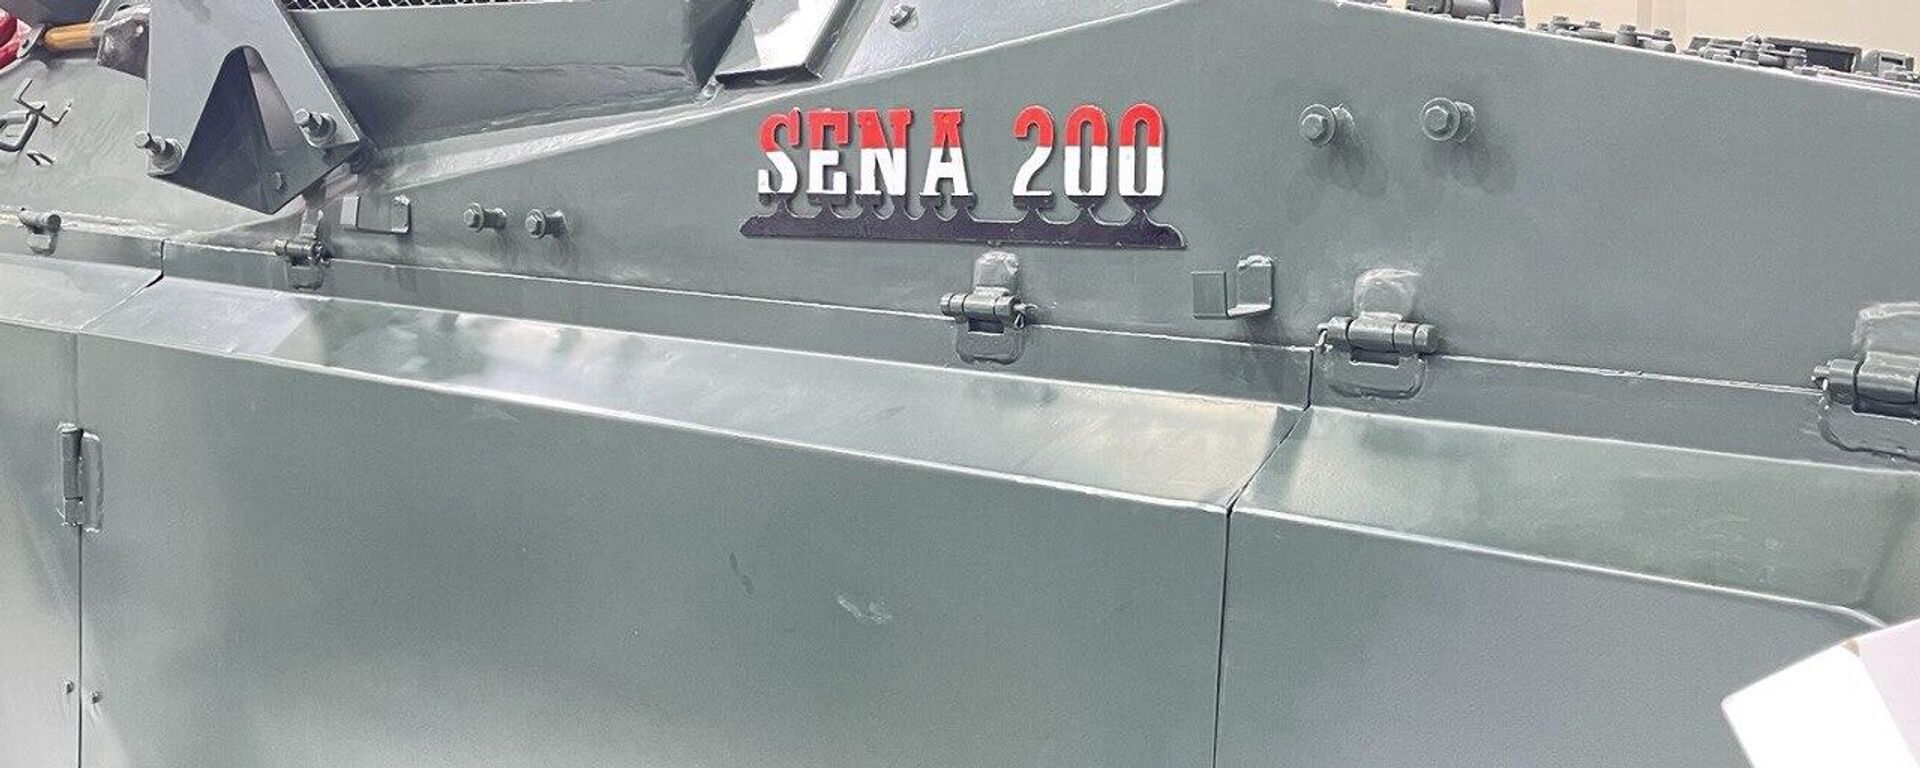 ناقلة الجند المصرية سينا - 200 - إيديكس 2023 - سبوتنيك عربي, 1920, 05.12.2023